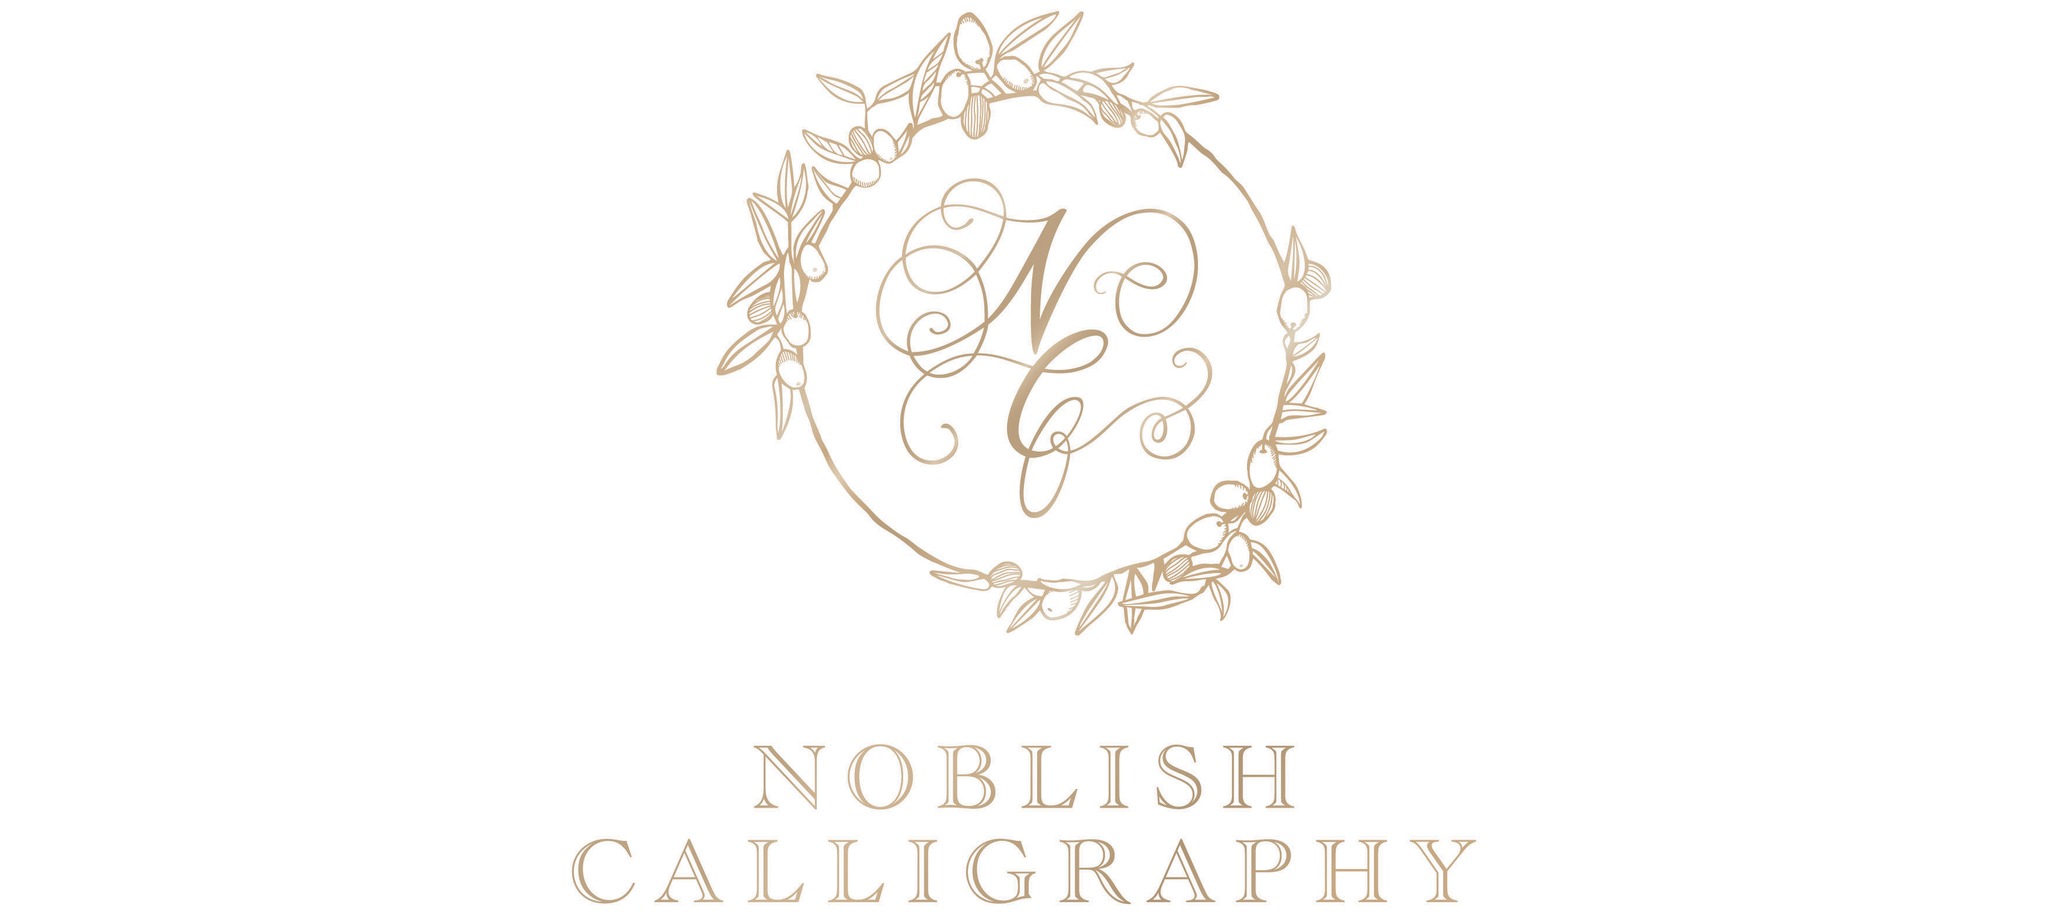 カリグラフィー道具・用品専門店 Noblish Calligraphy/ノーブリッシュカリグラフィー